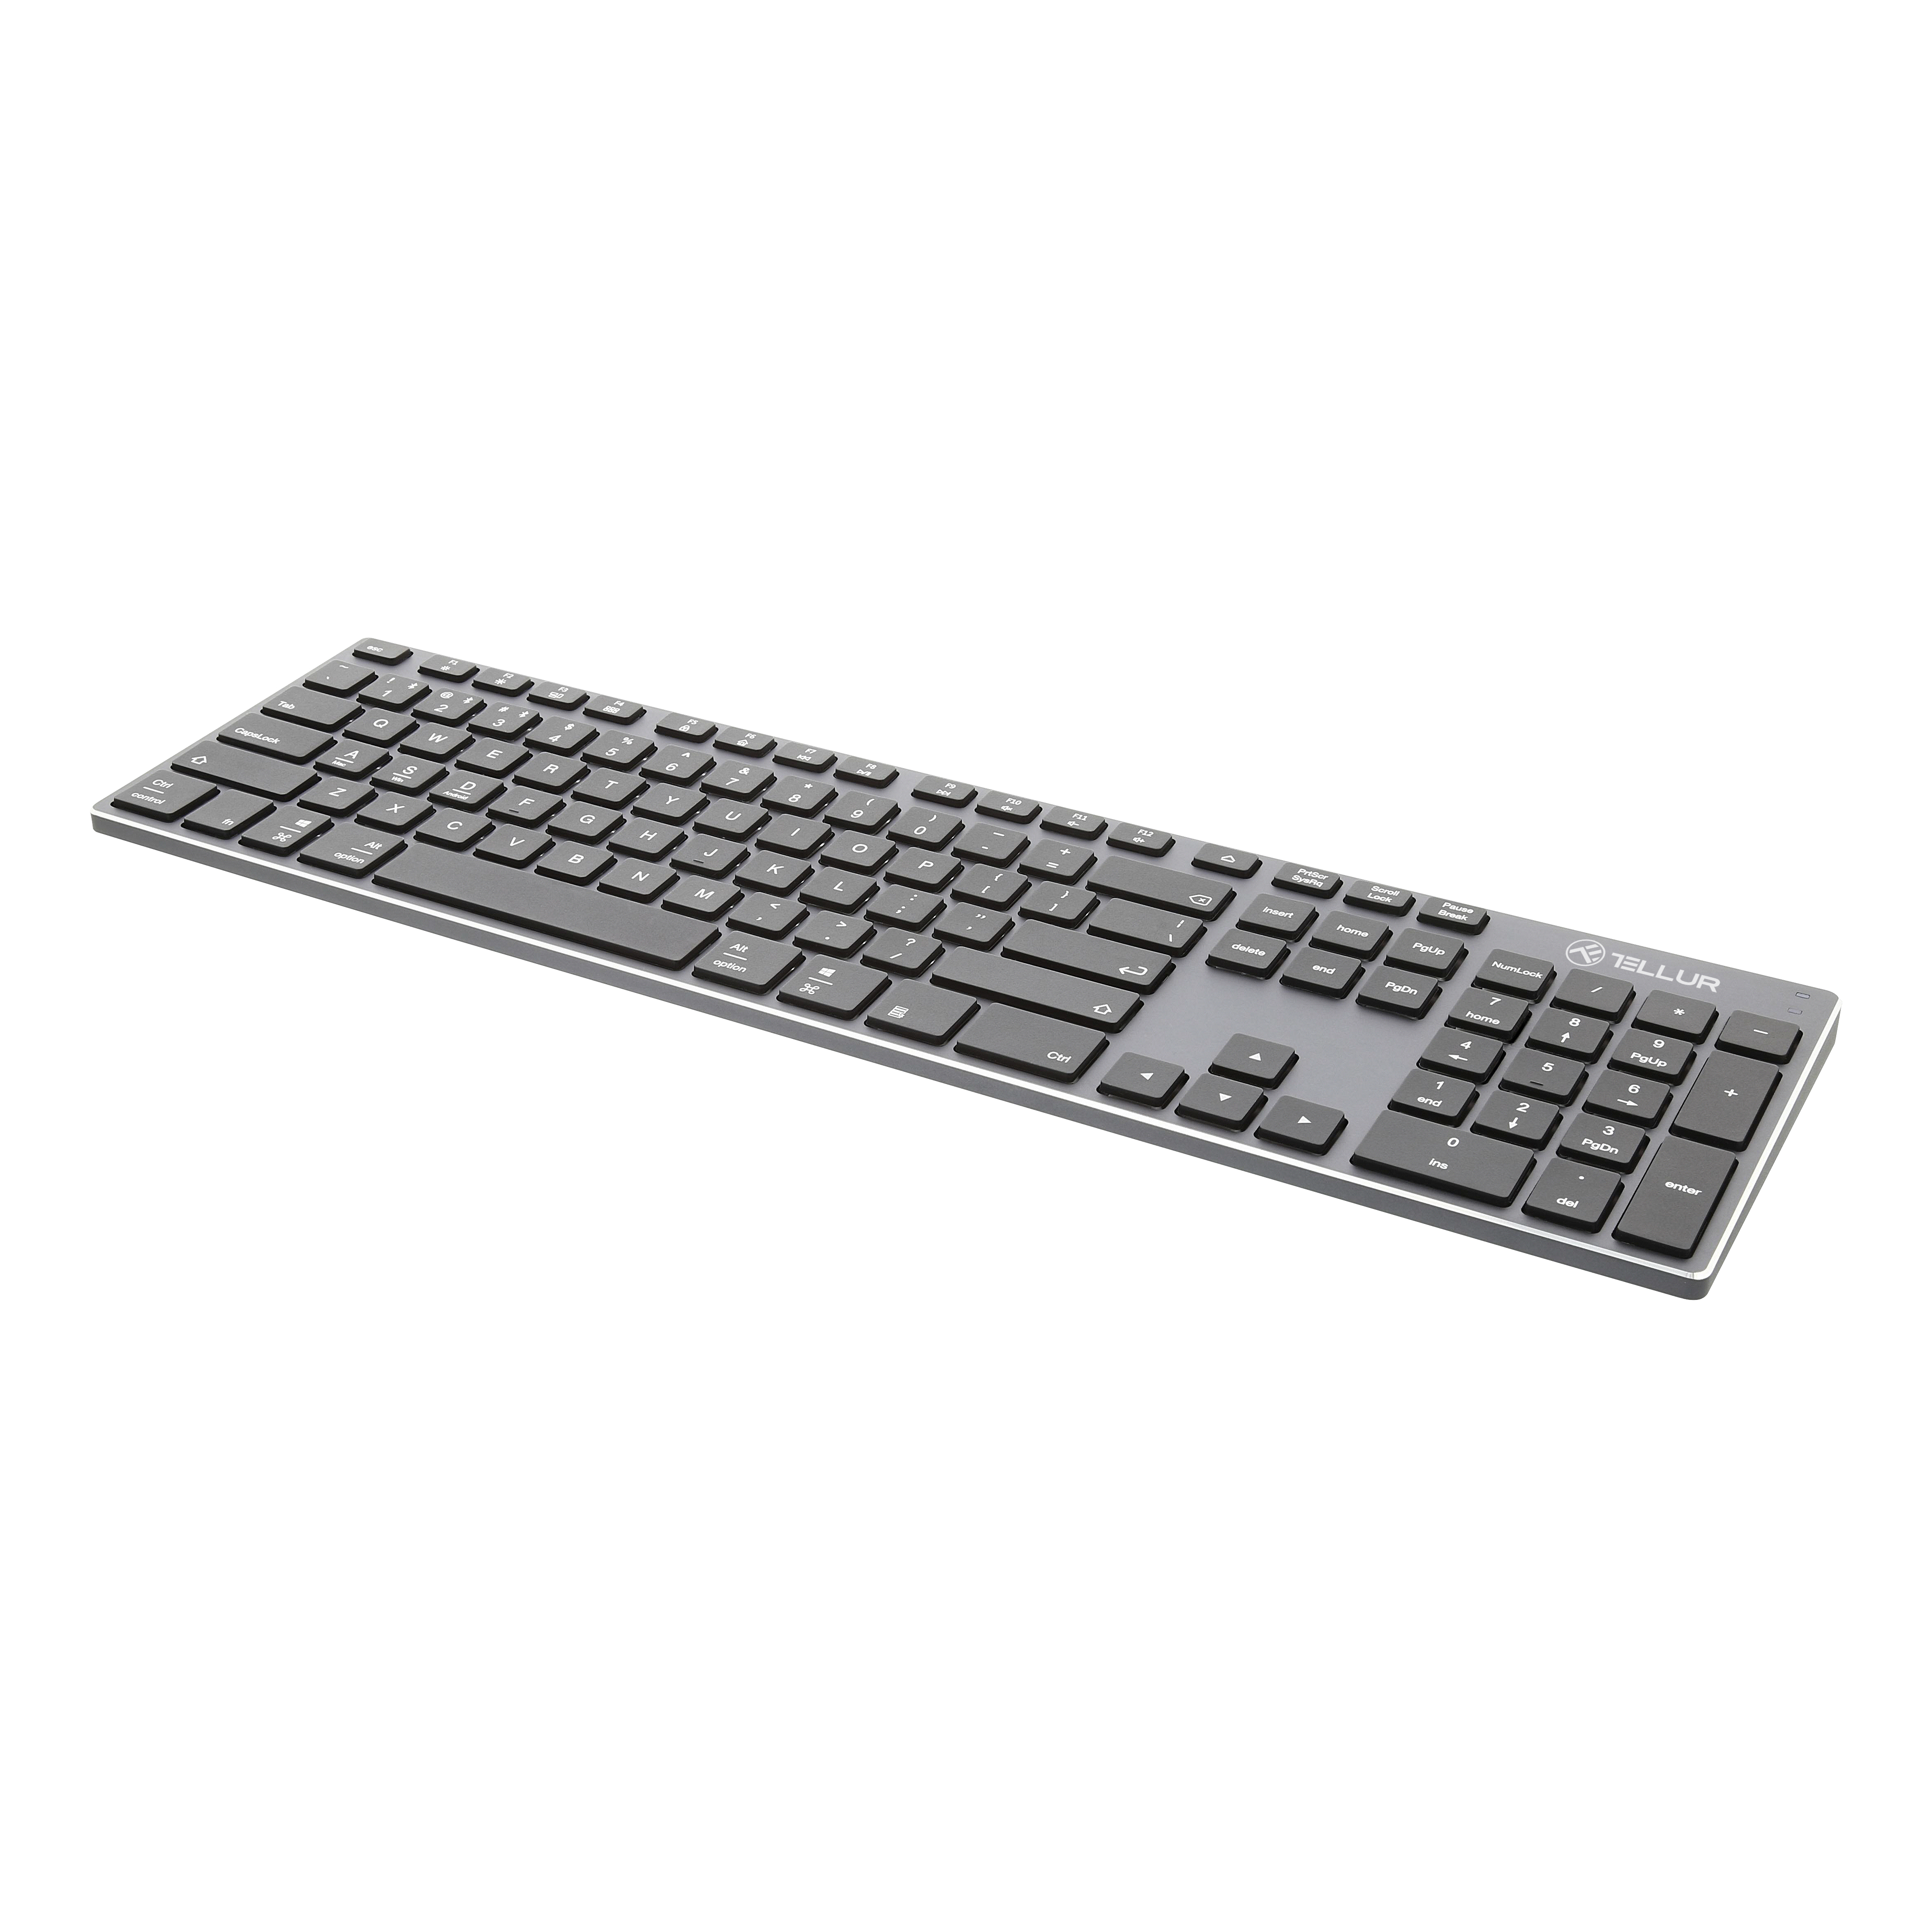 Tastatura Wireless Tellur Shade, Bluetooth, USB, US Layout, 350 mAh, Aluminiu, Tastaturi Gri si Negre (Negre) imagine noua tecomm.ro